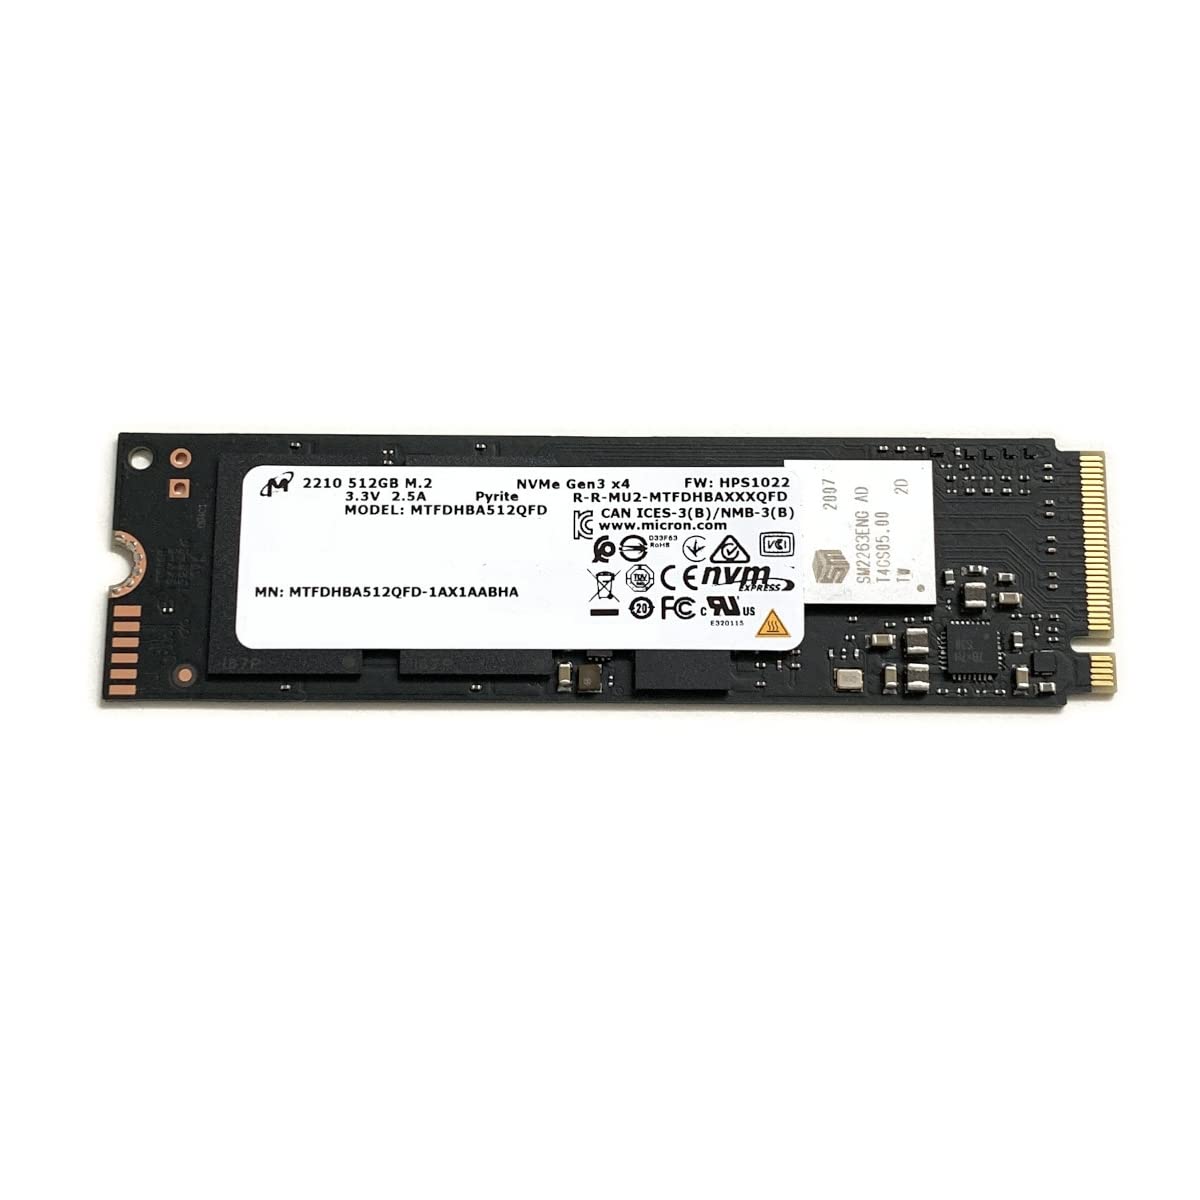 ΔΙΣΚΟΣ SSD DELL MICRON 2210s M2 512GB NVME REFURBISHED A GRADE